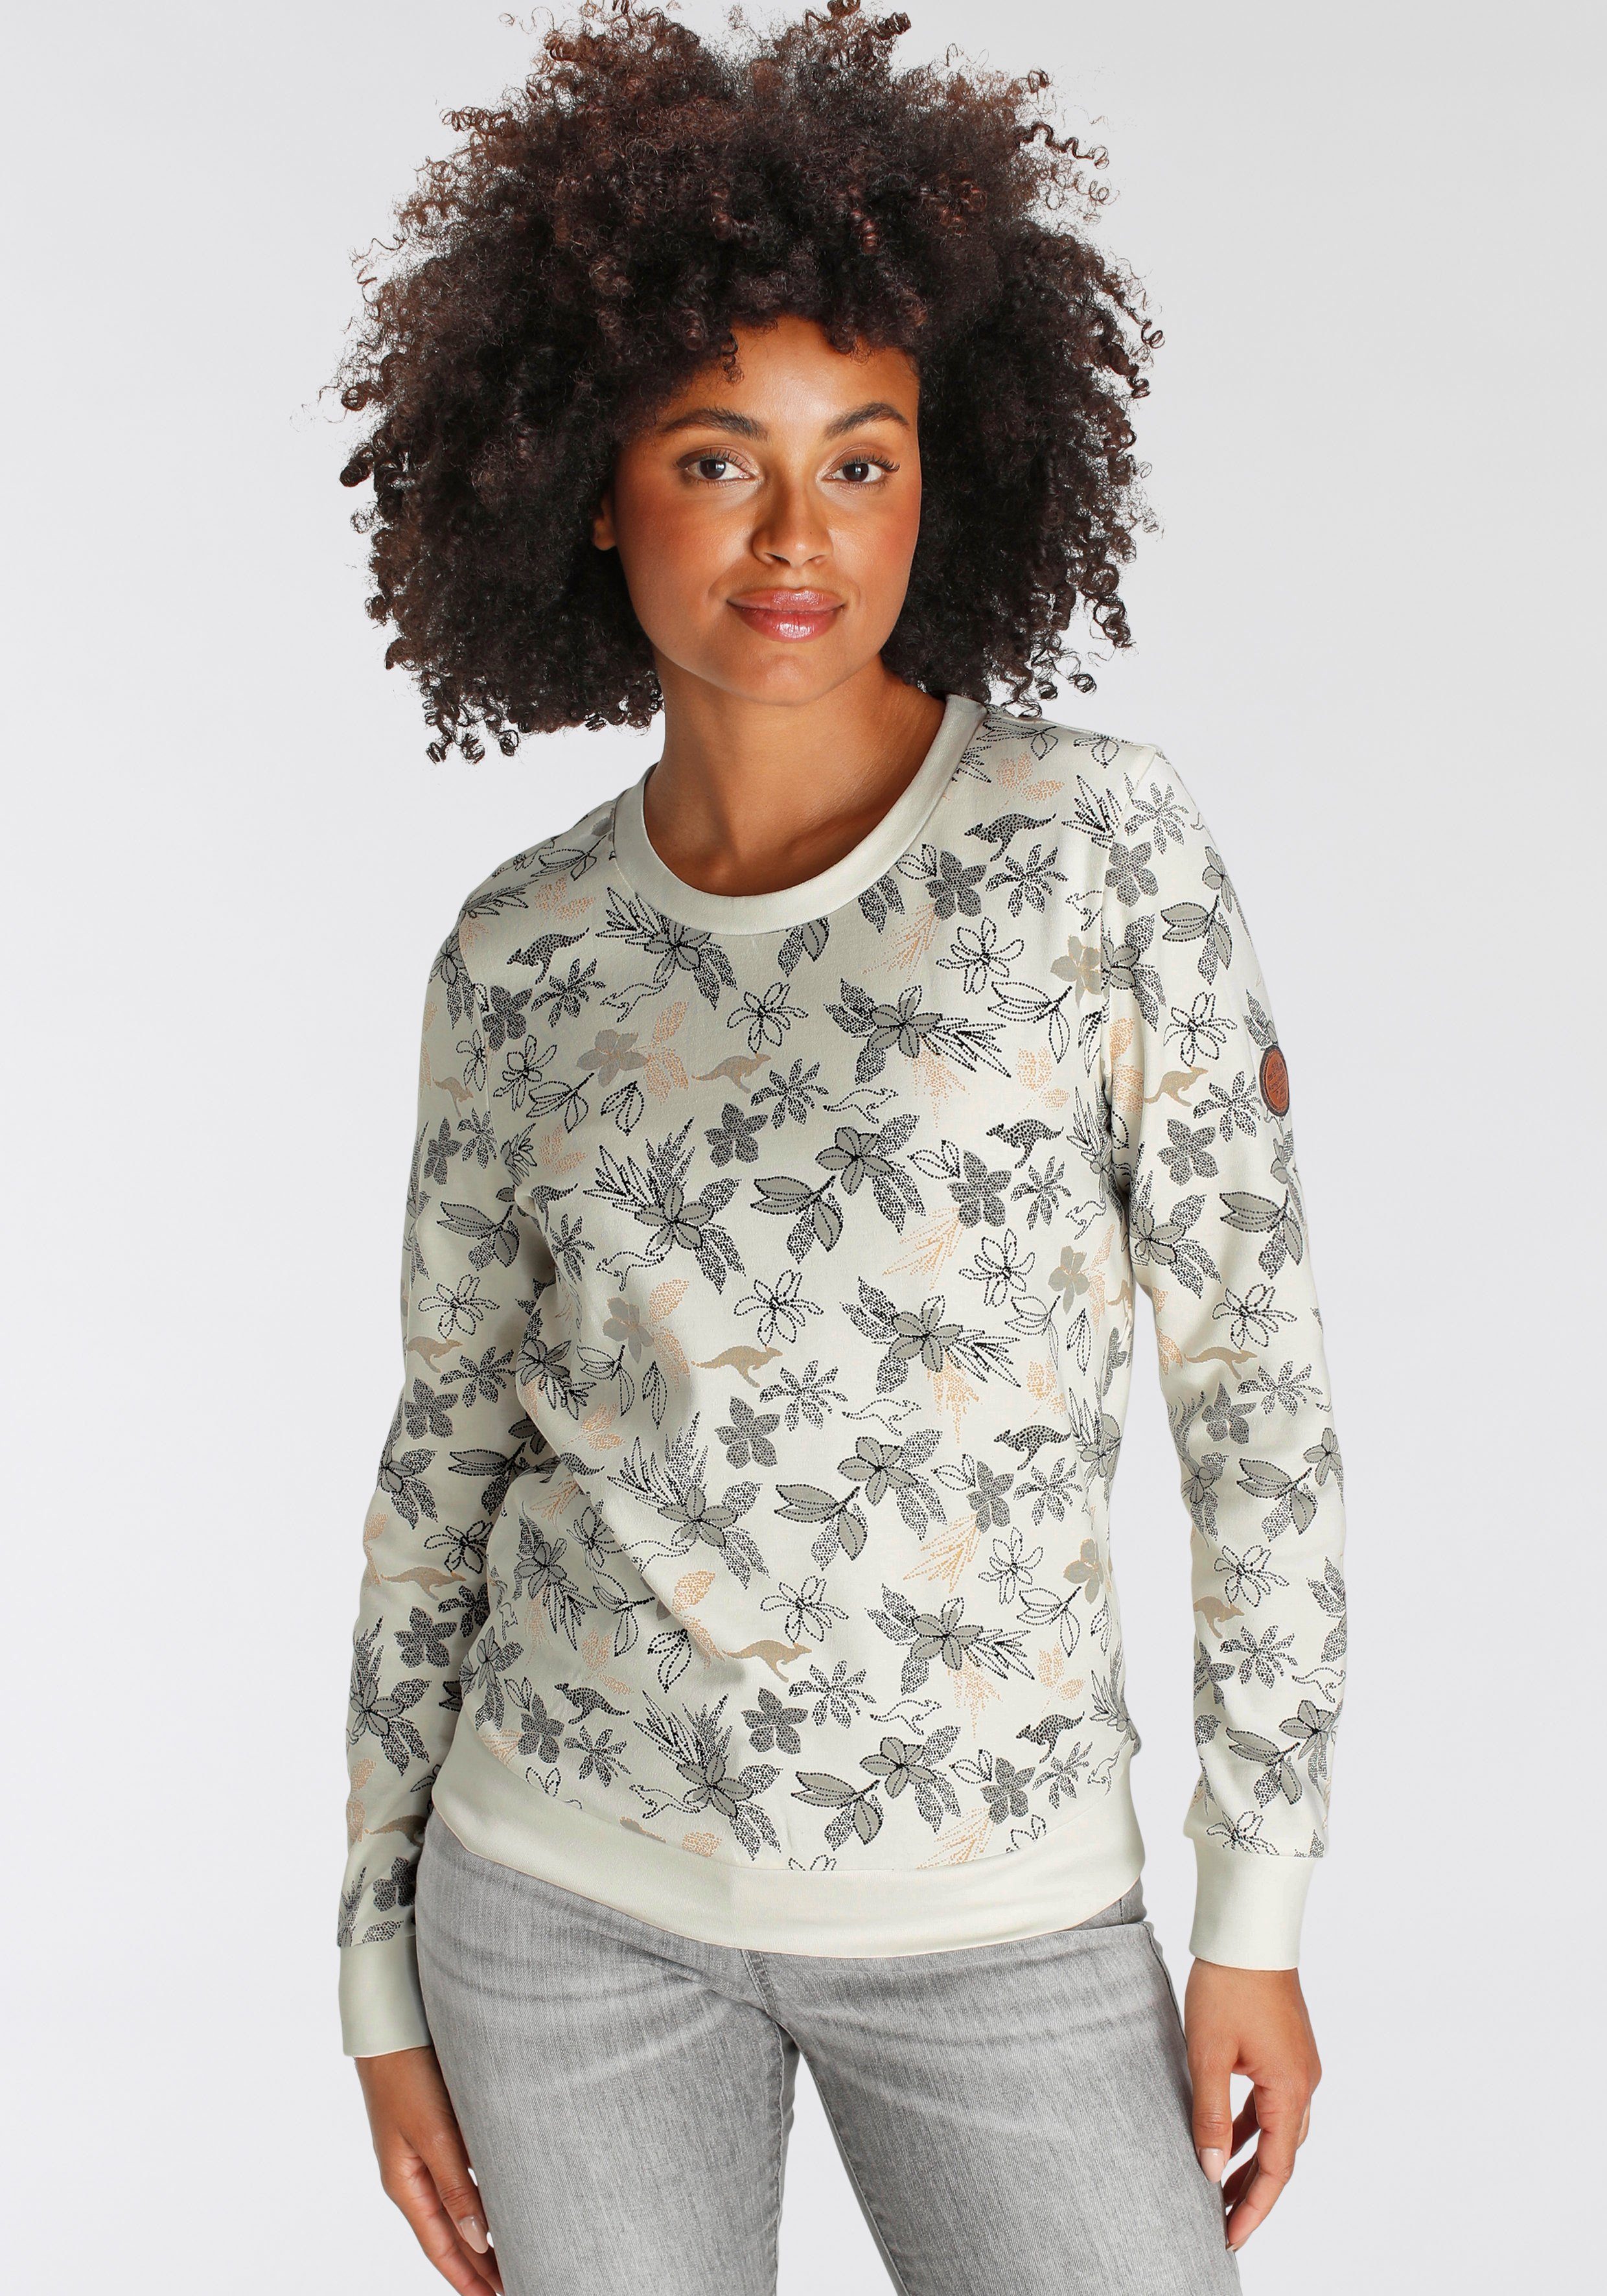 Preislimitierter Sonderverkauf KangaROOS Sweatshirt, Süsser Sweater mit Allover-Druck tollen von KangaROOS